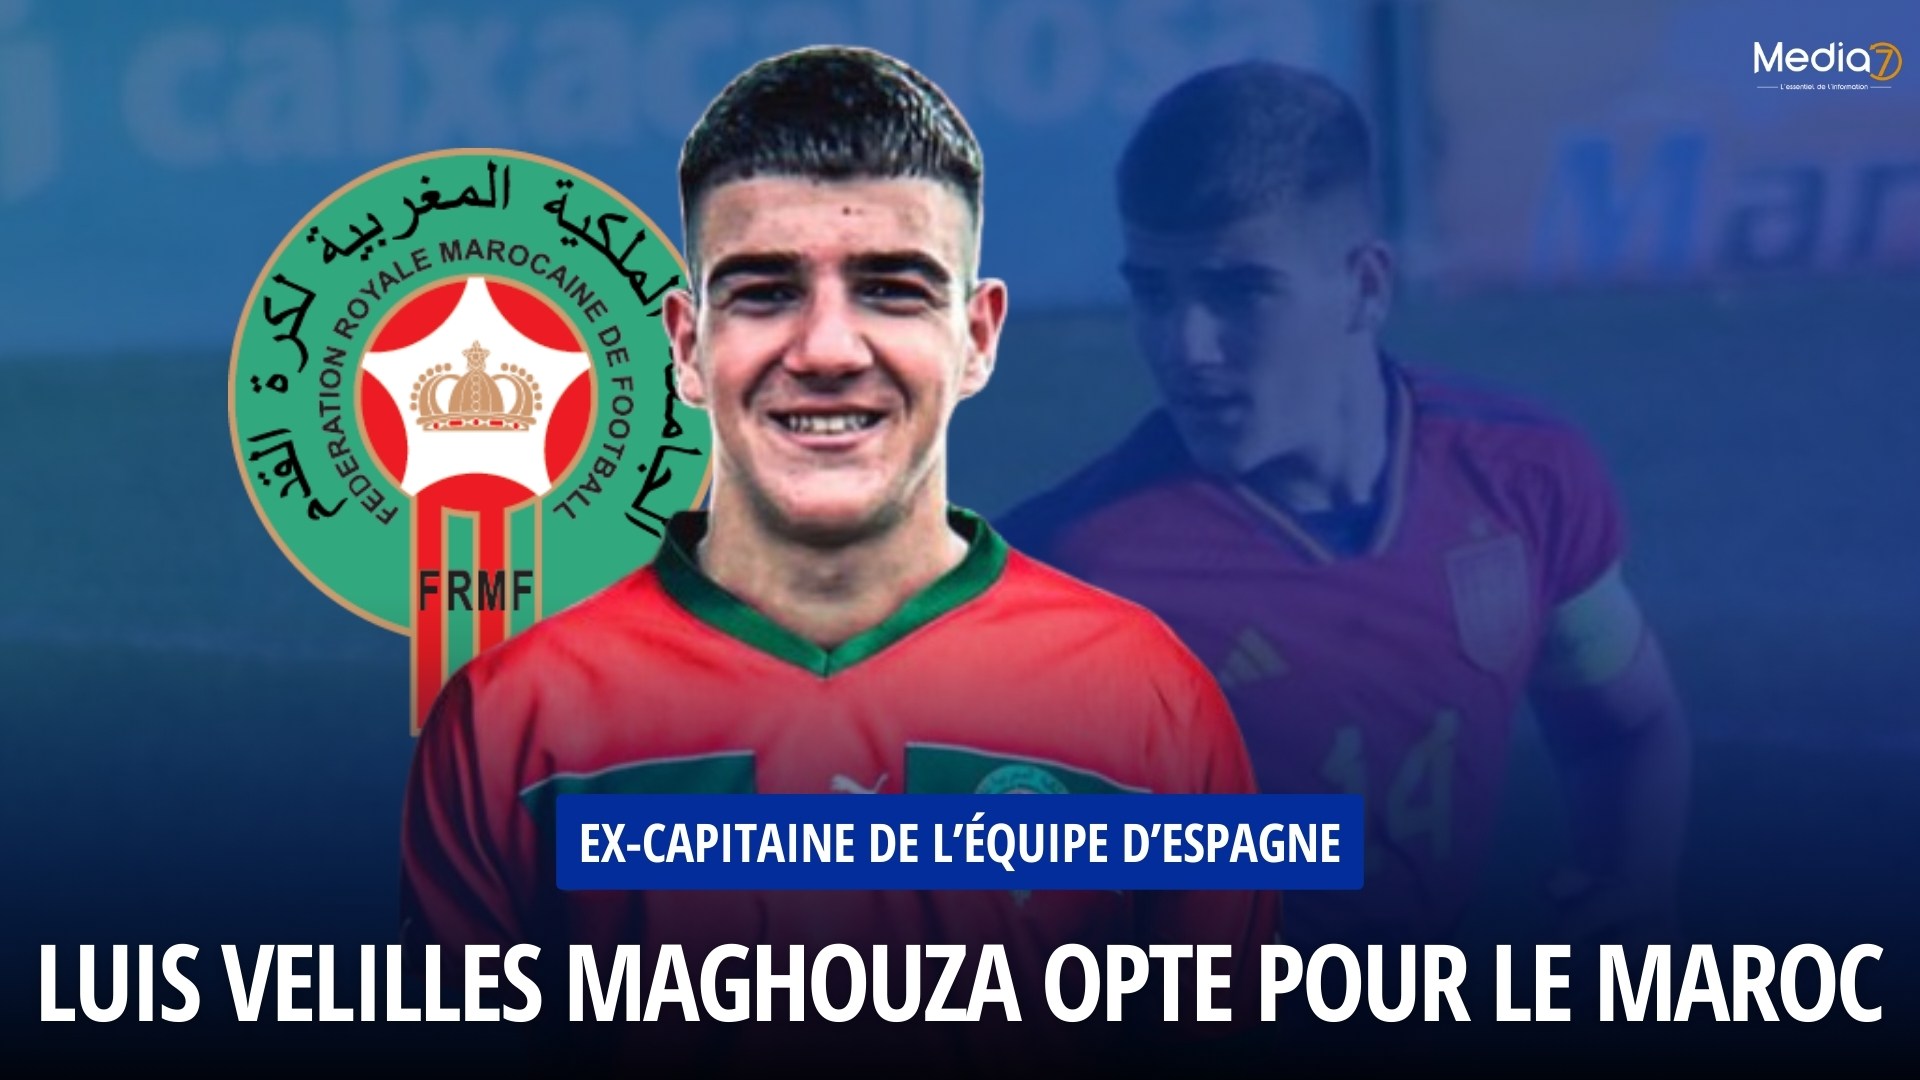 Luis Velilles Maghouza, Ex-capitaine de l’équipe d’Espagne, Opte pour le Maroc